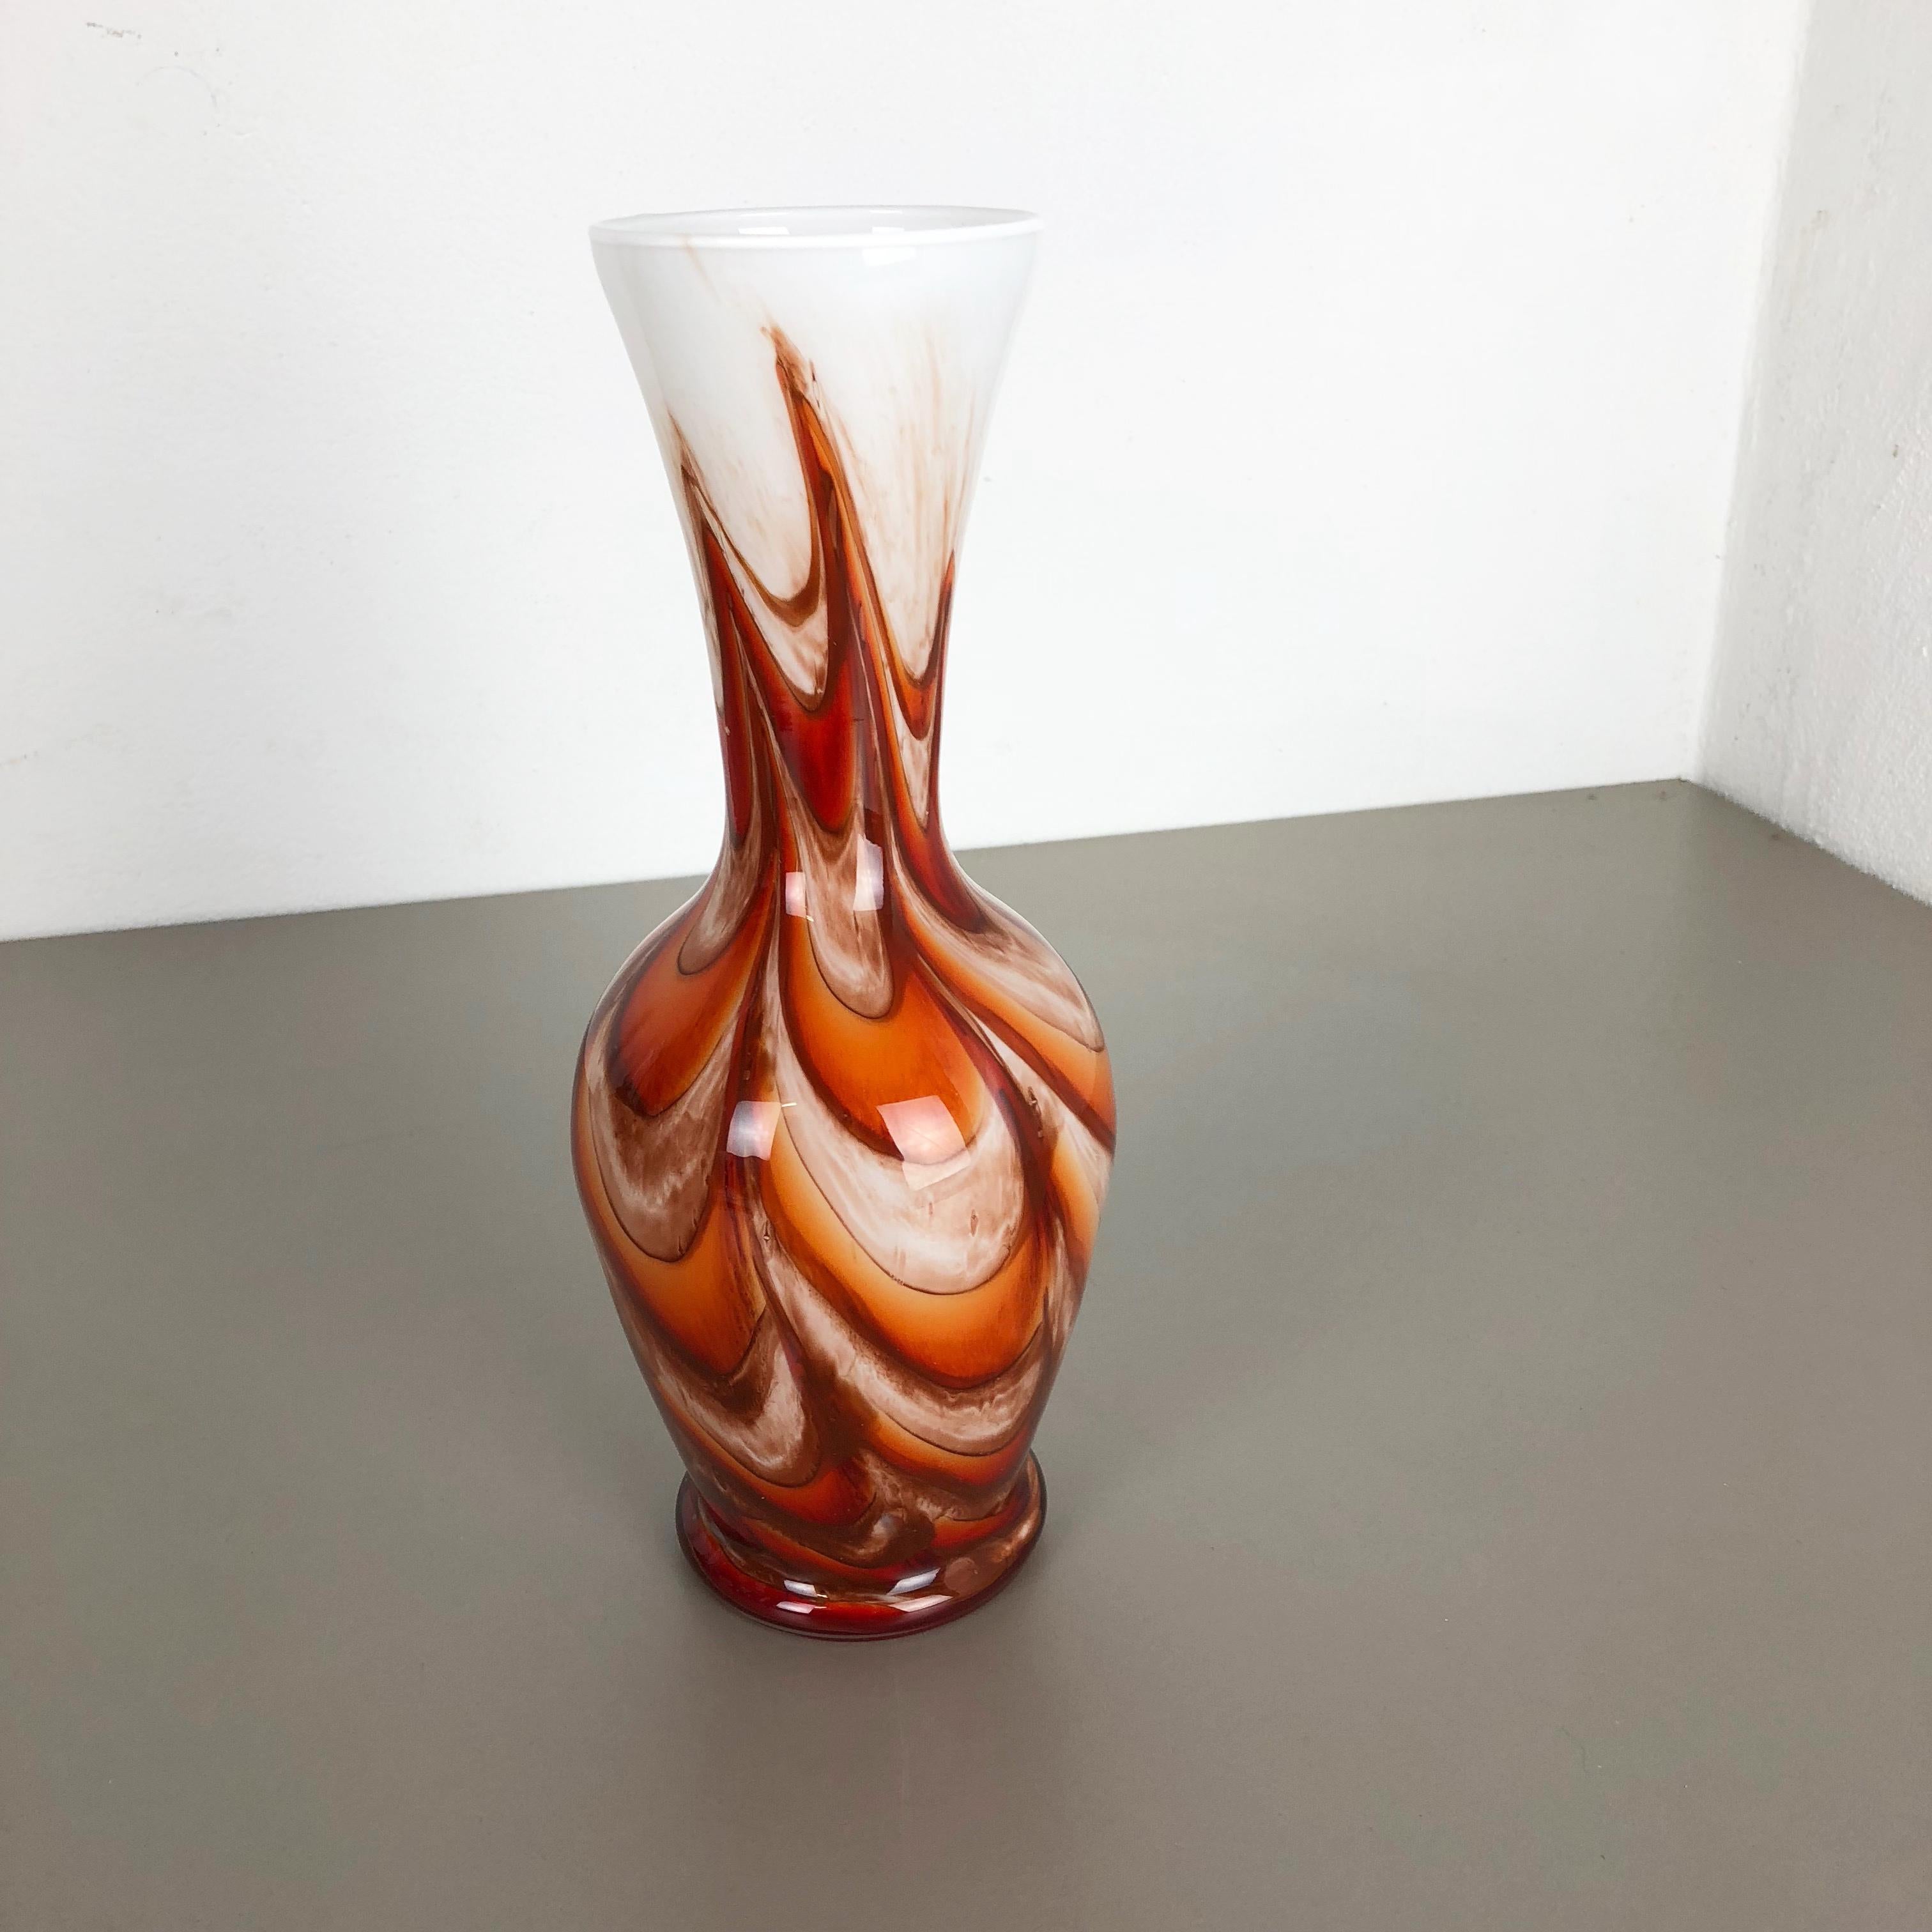 Artikel:

Pop-Art-Vase

Produzent:

Opalin Florenz


Jahrzehnt:

1970s

Originale mundgeblasene Pop-Art-Vase aus den 1970er Jahren, hergestellt in Italien von Opaline Florenz. Aus hochwertigem italienischem Opalglas.
Hübsche 1970er